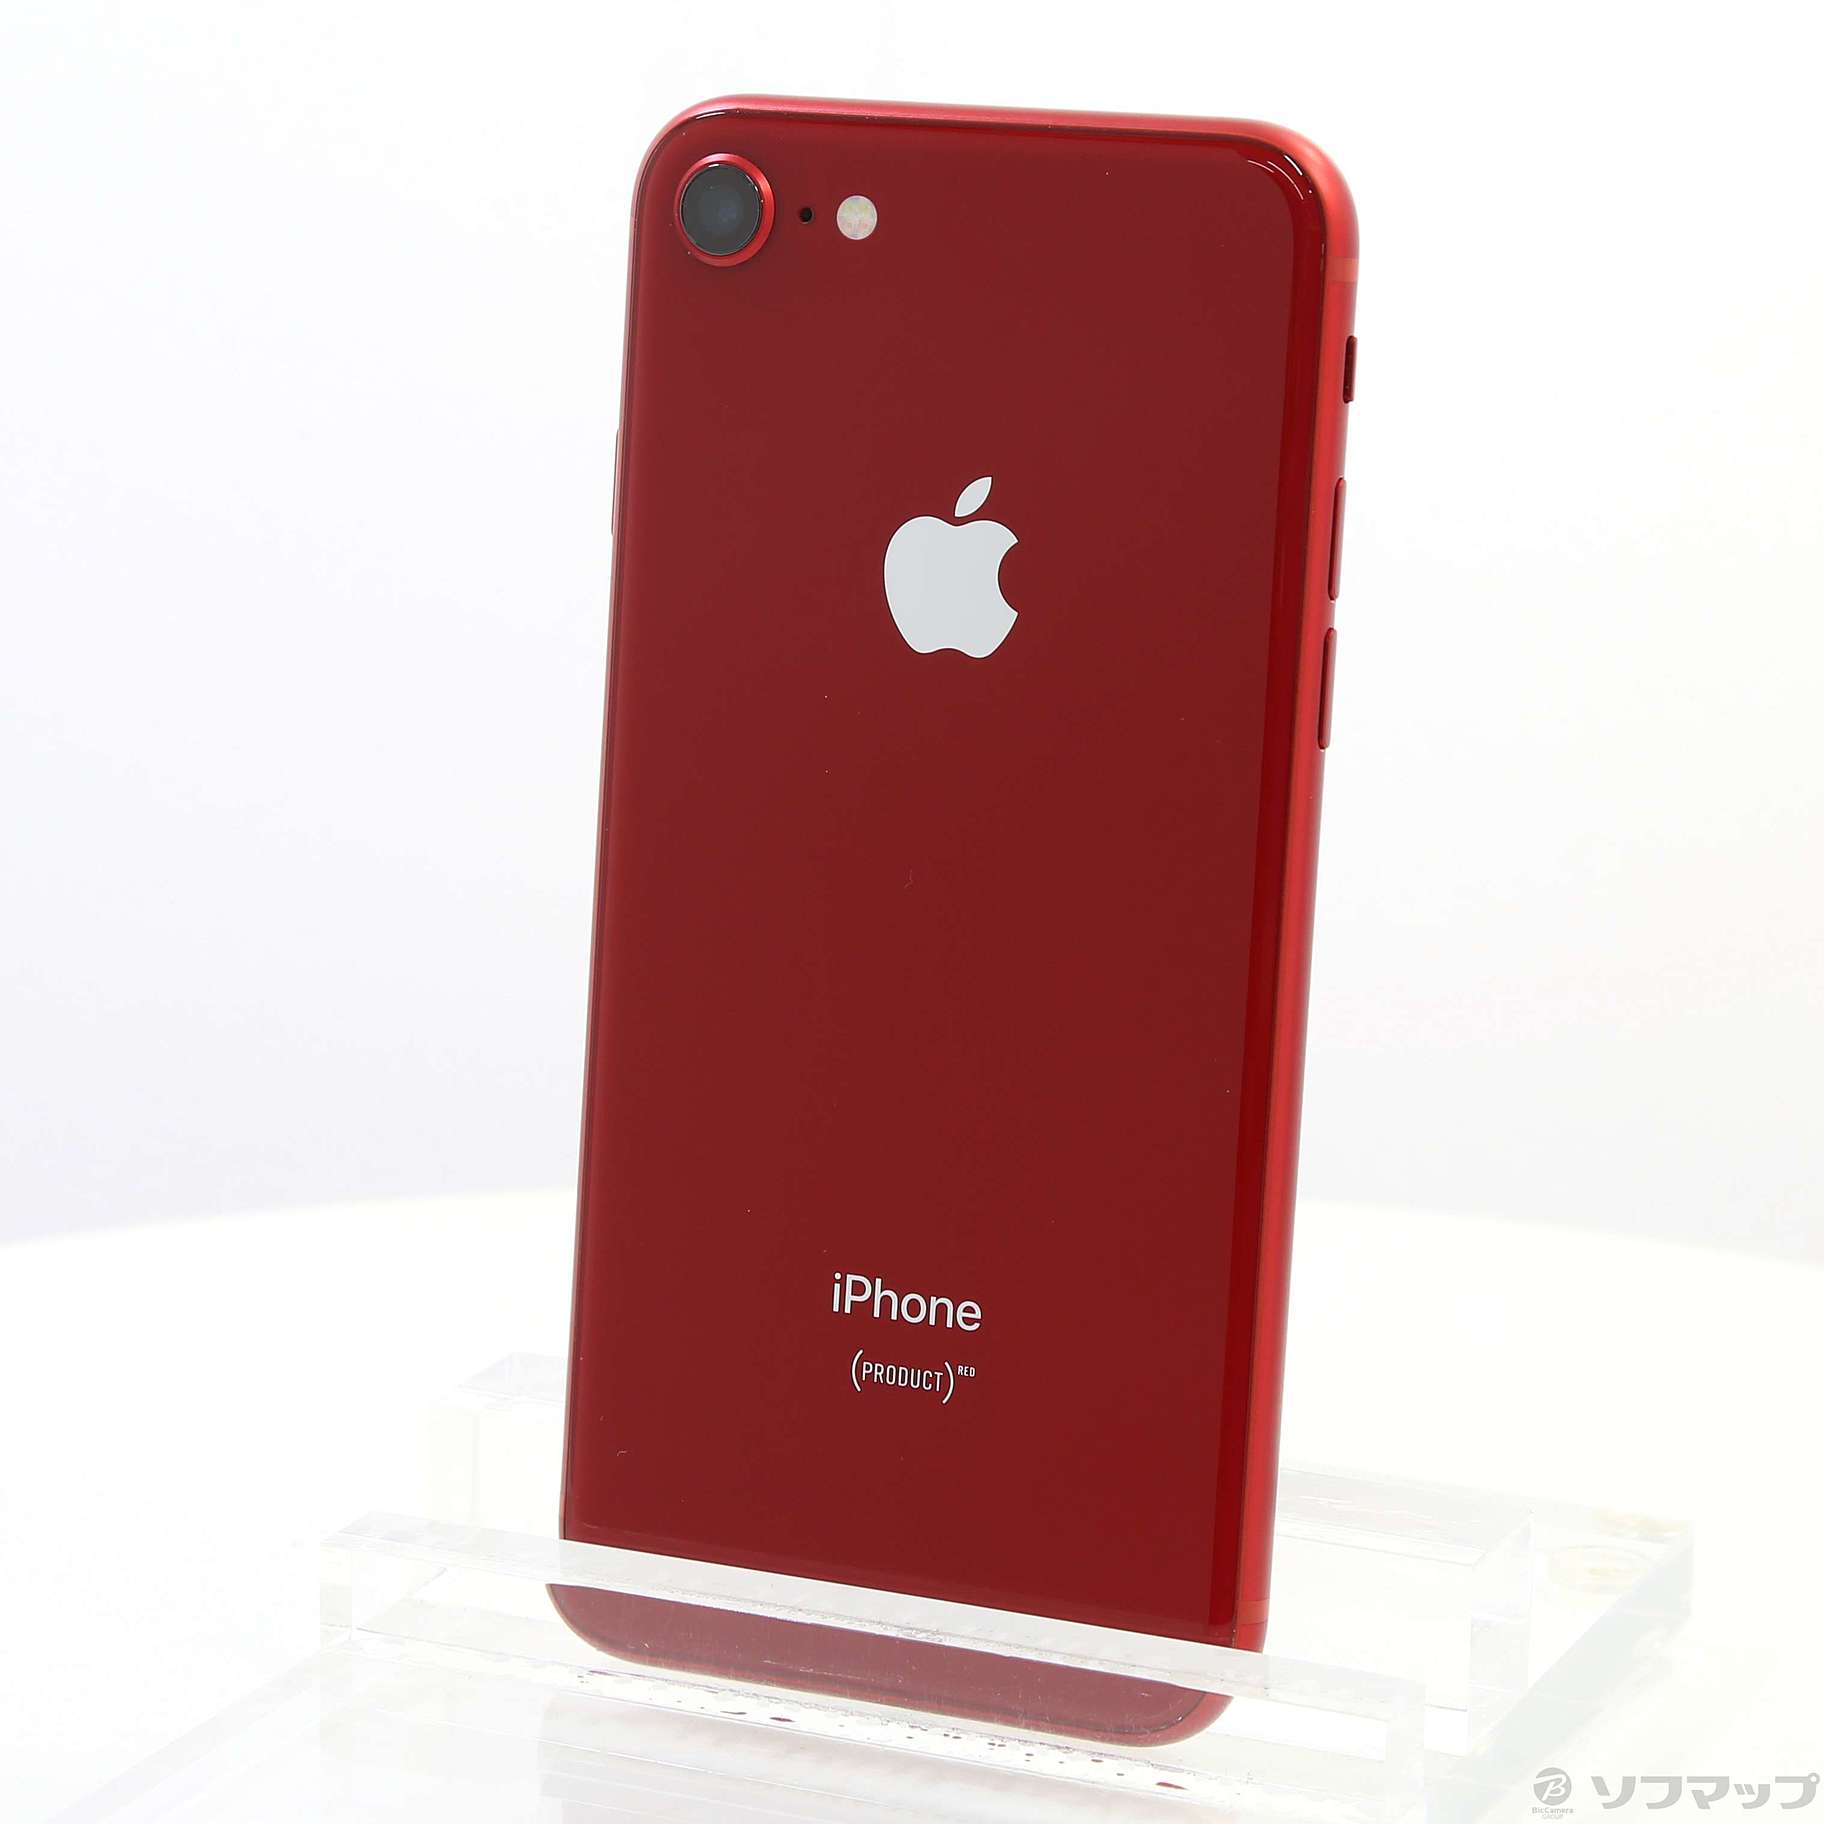 スマートフォン本体【超美品】iPhone 8 product red 64GB